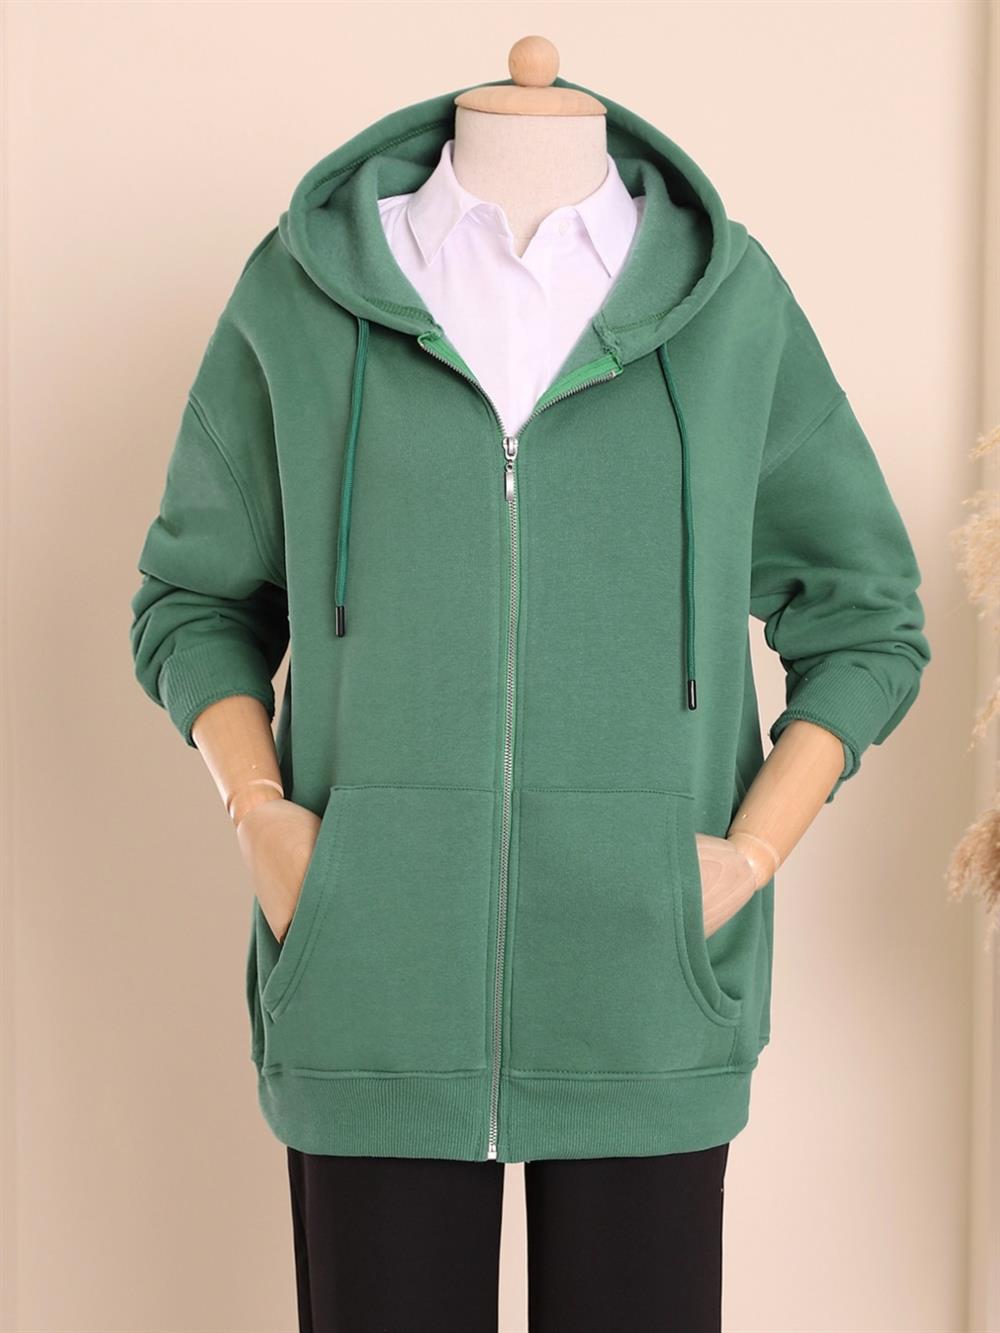 Şardonlu 3 İplik Kapşonlu Sweat -Yeşil - 153-0032-R35 | DIVON Marka  Kapşonlu Sweatshirt Modelleri | Kadın Tesettür Giyim - KaliteMall.com